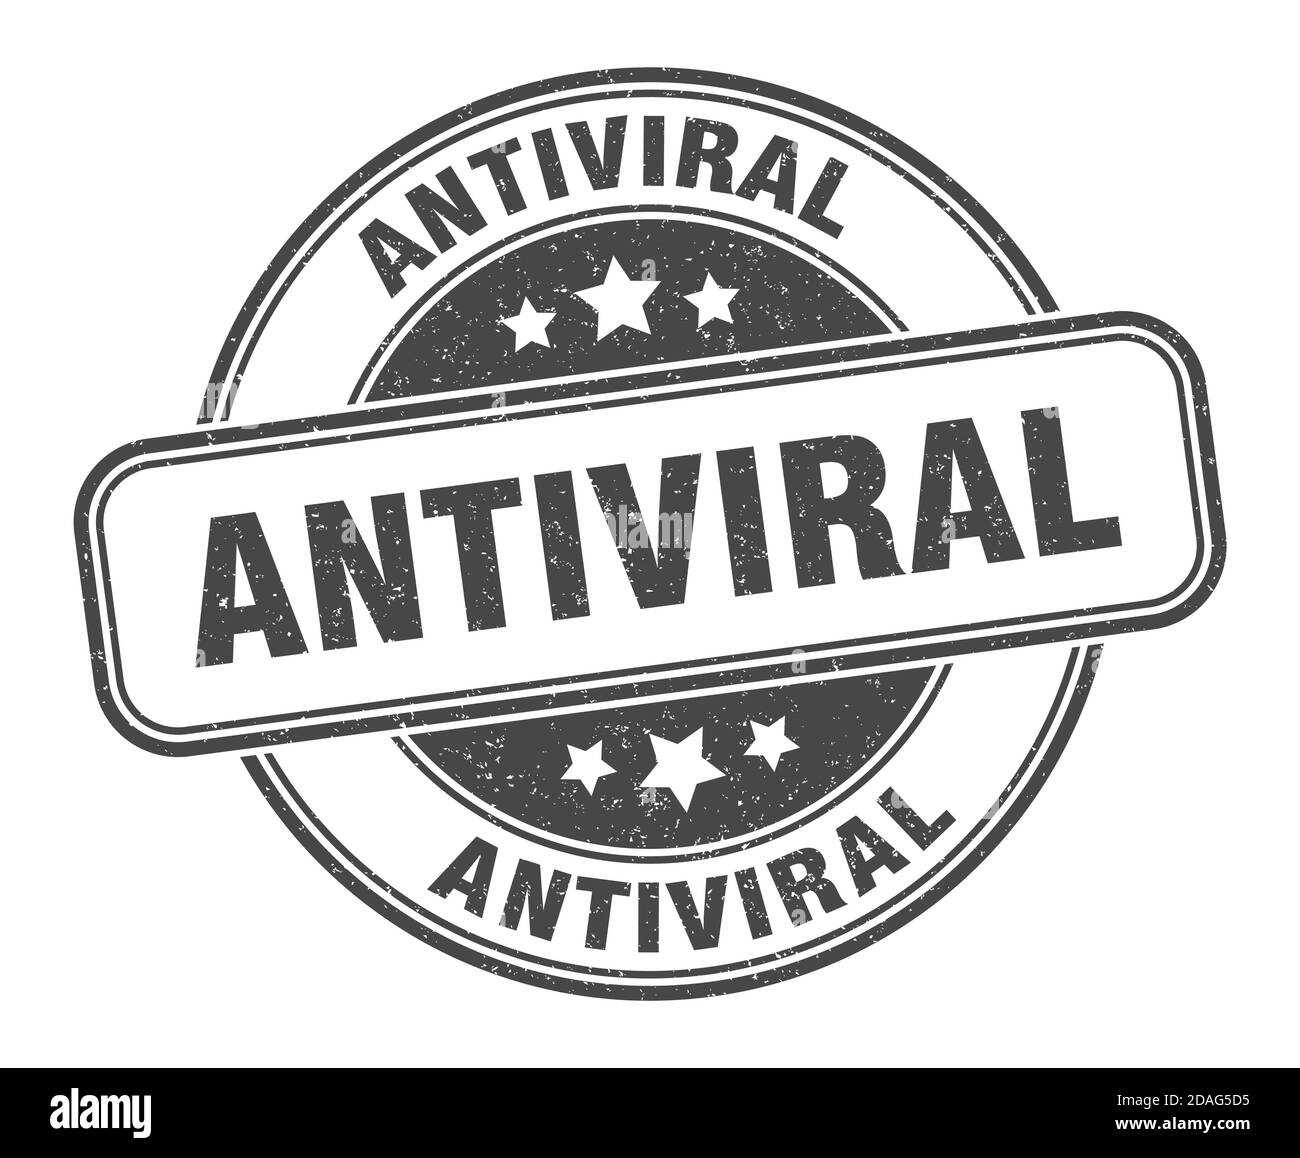 Antiviraler Stempel. Antivirales Zeichen. Rundes Grunge-Etikett Stock Vektor